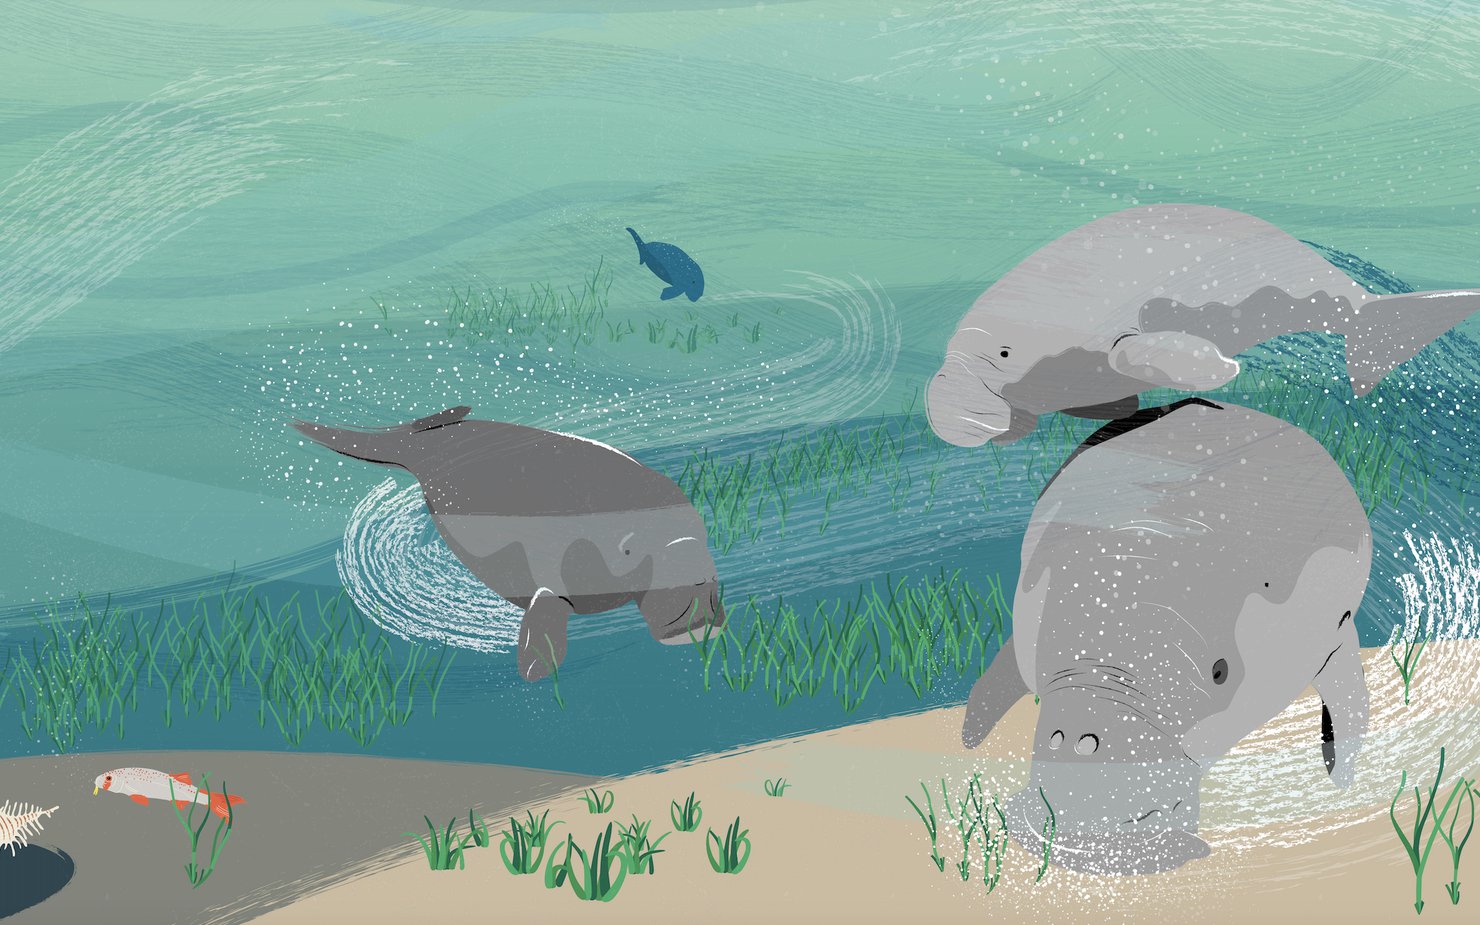 رسم توضيحي يظهر مجموعة من أبقار البحر تسبح تحت سطح البحر